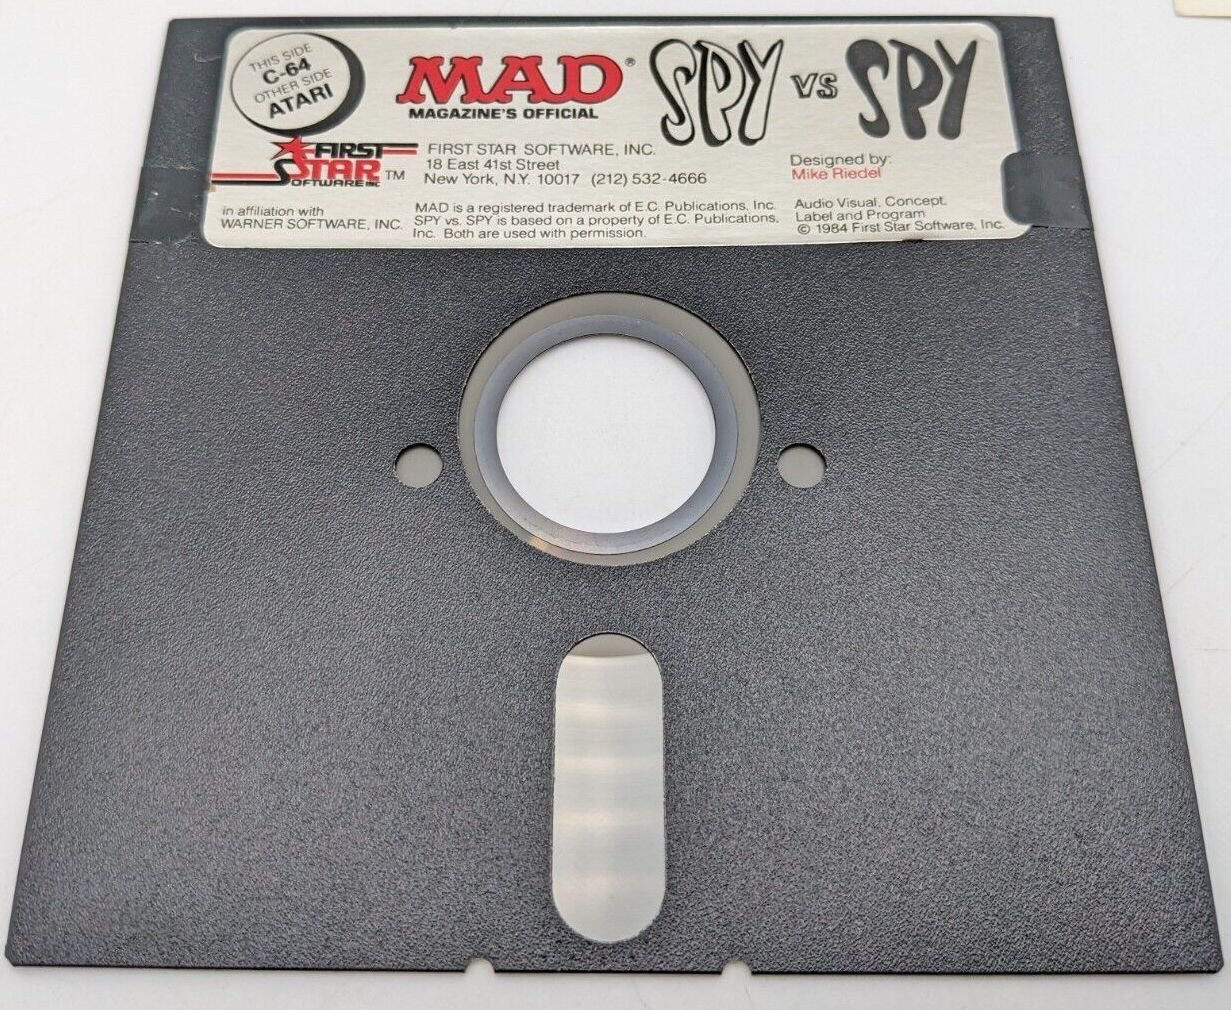 Spy vs. Spy - Commodore 64